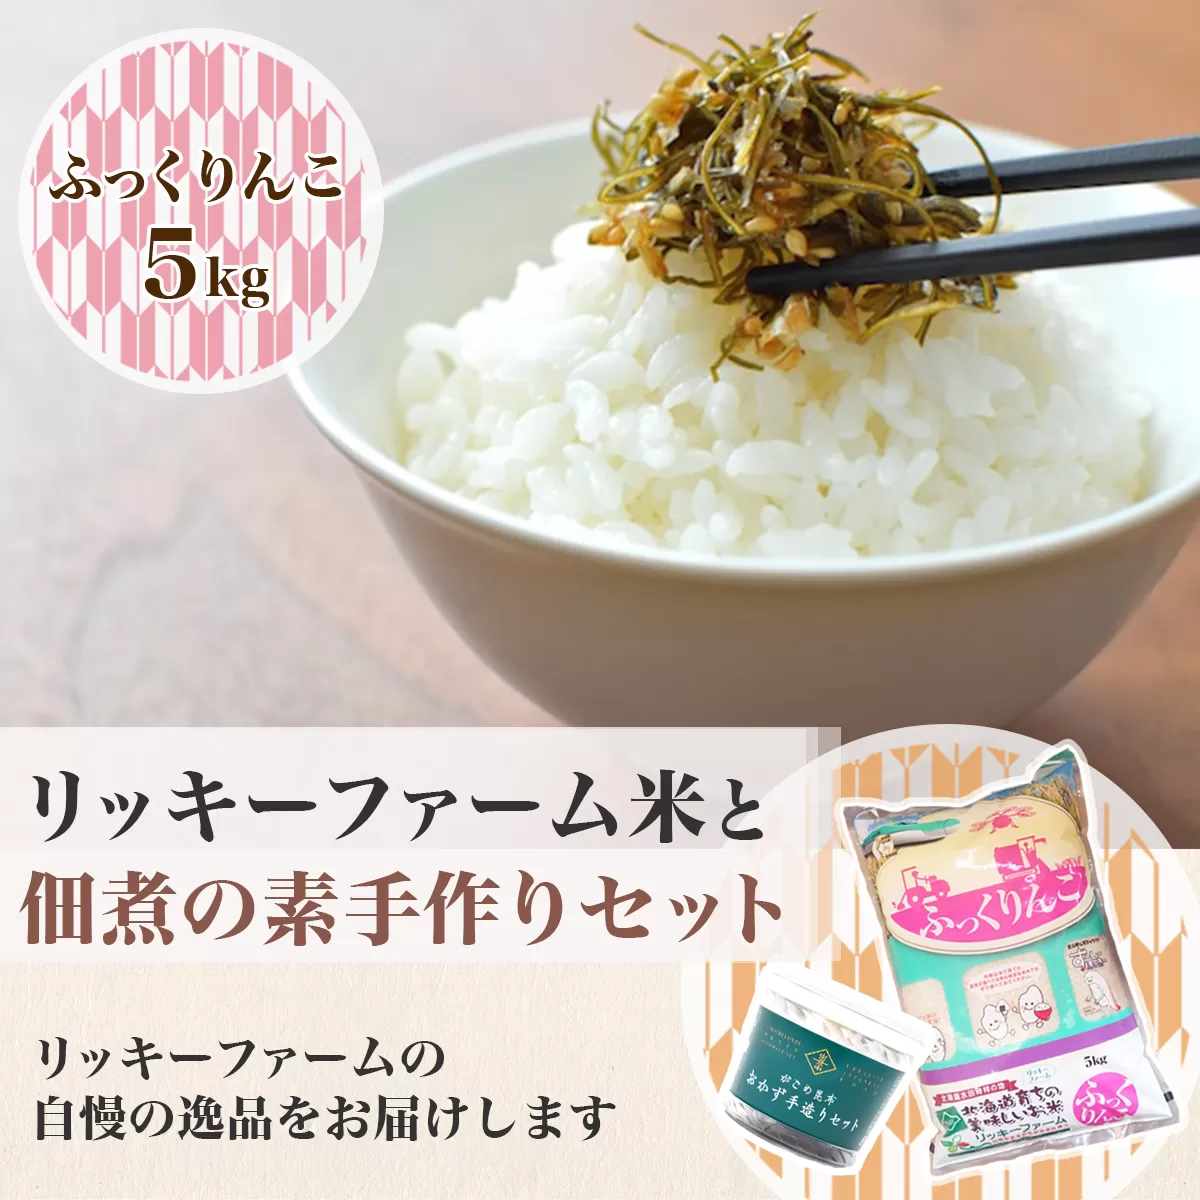 リッキーファーム米と佃煮の素手作りセット【ふっくりんこ5kg】 HOKK021